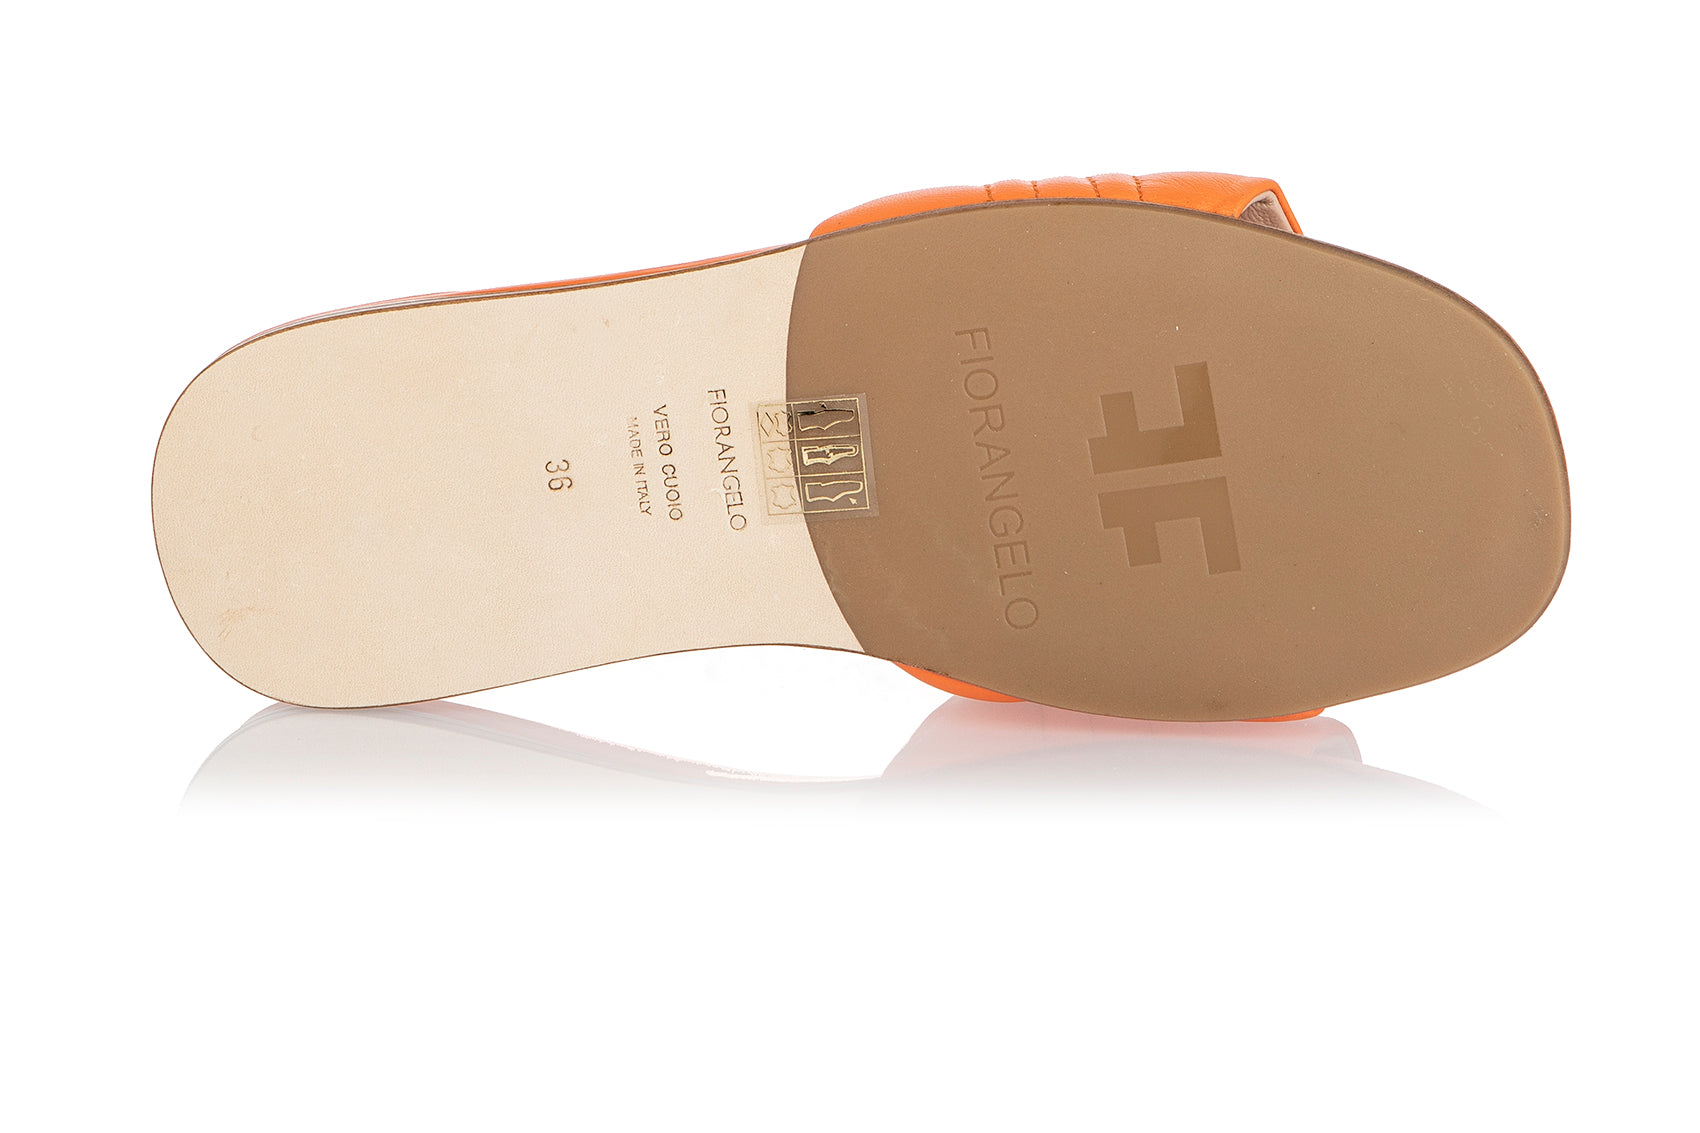 8542 Fiorangelo Sandals / Orange